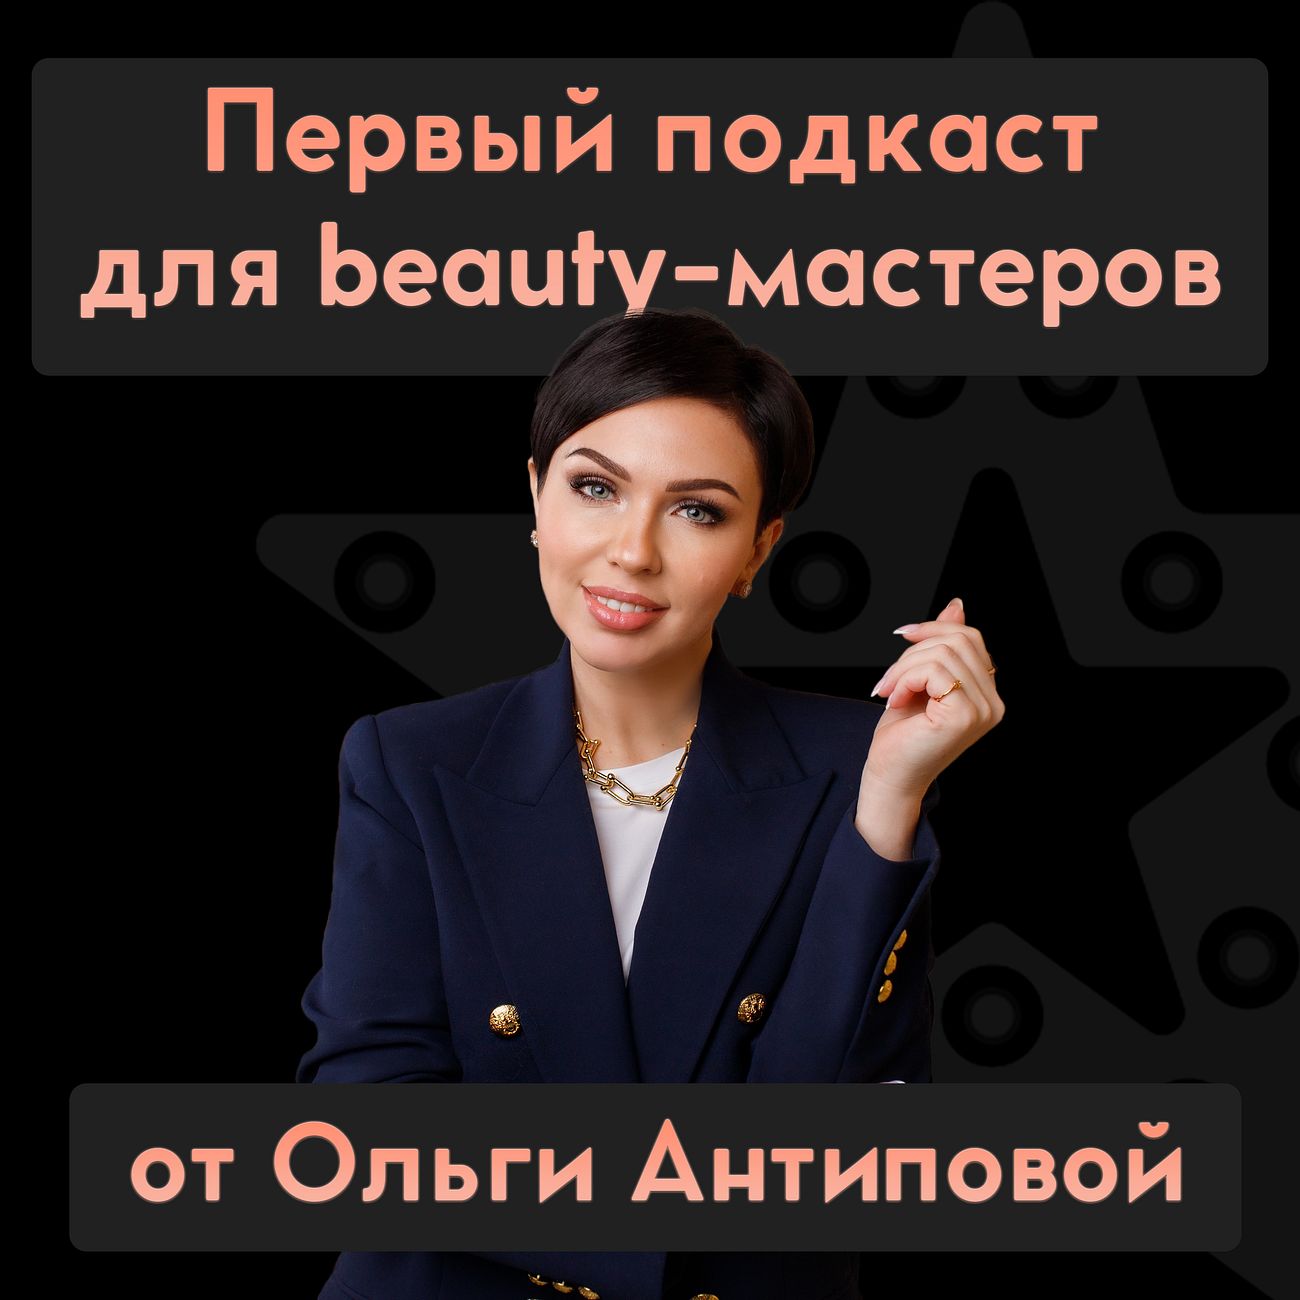 Первый подкаст для beauty-мастеров Ольги Антиповой